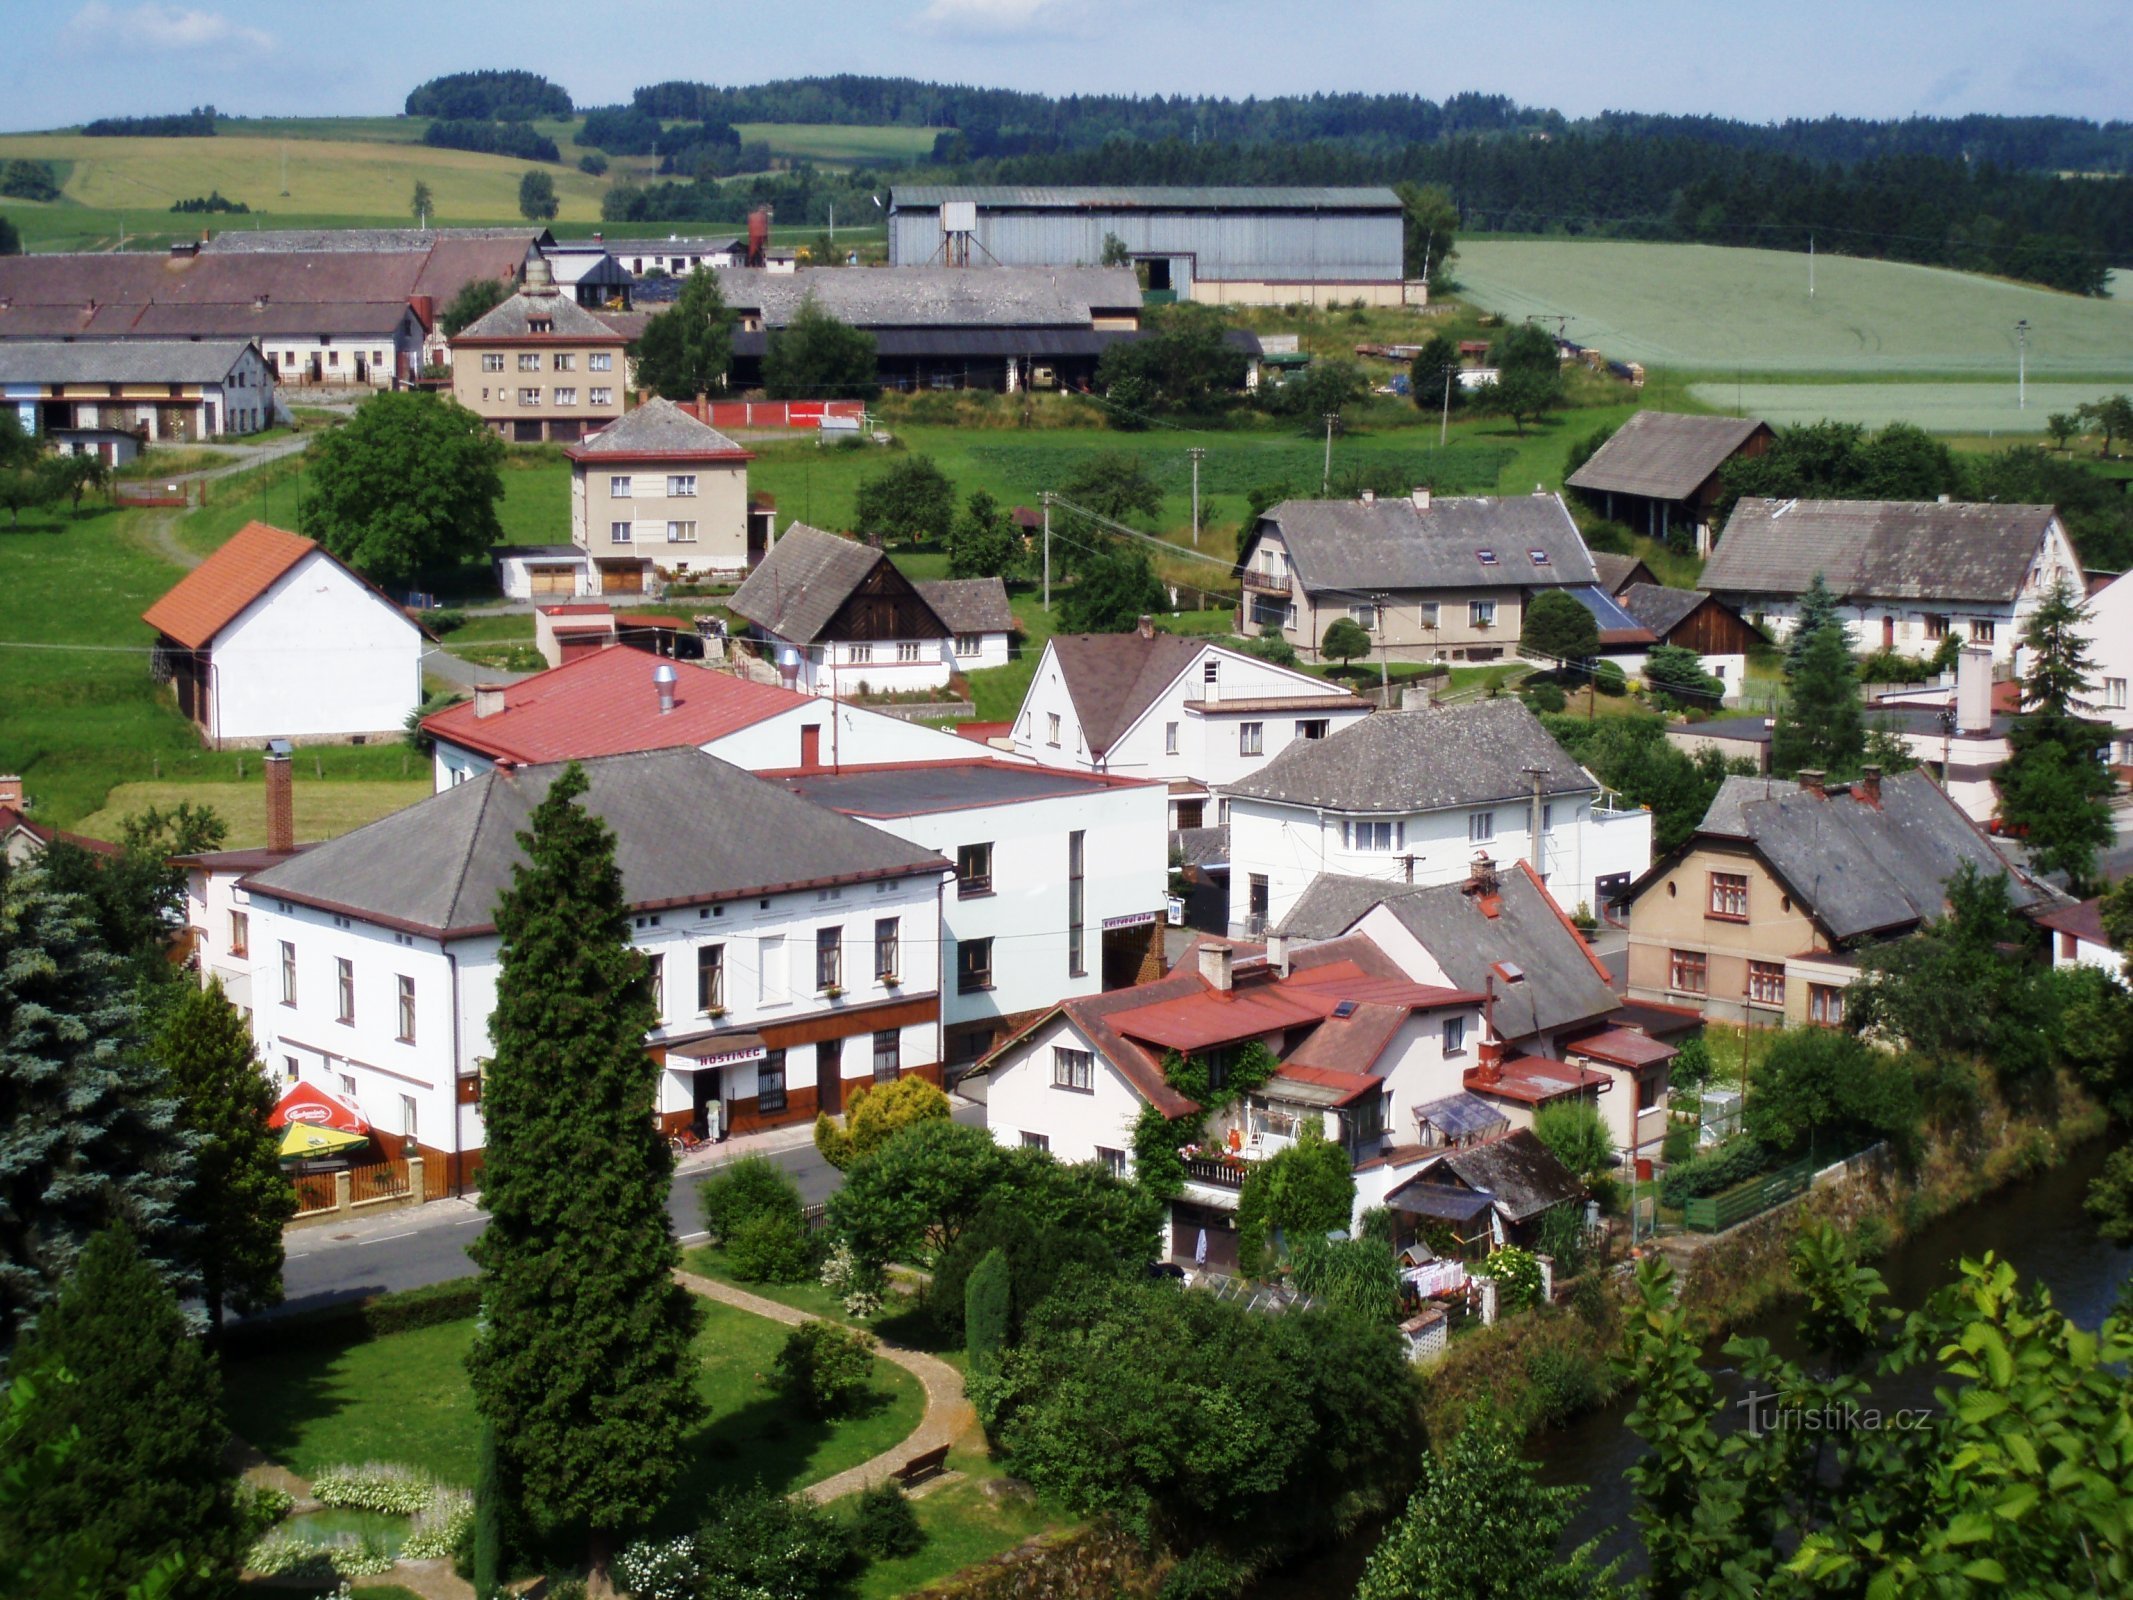 Vedere a satului din turnul clopotniță (Havlovice)